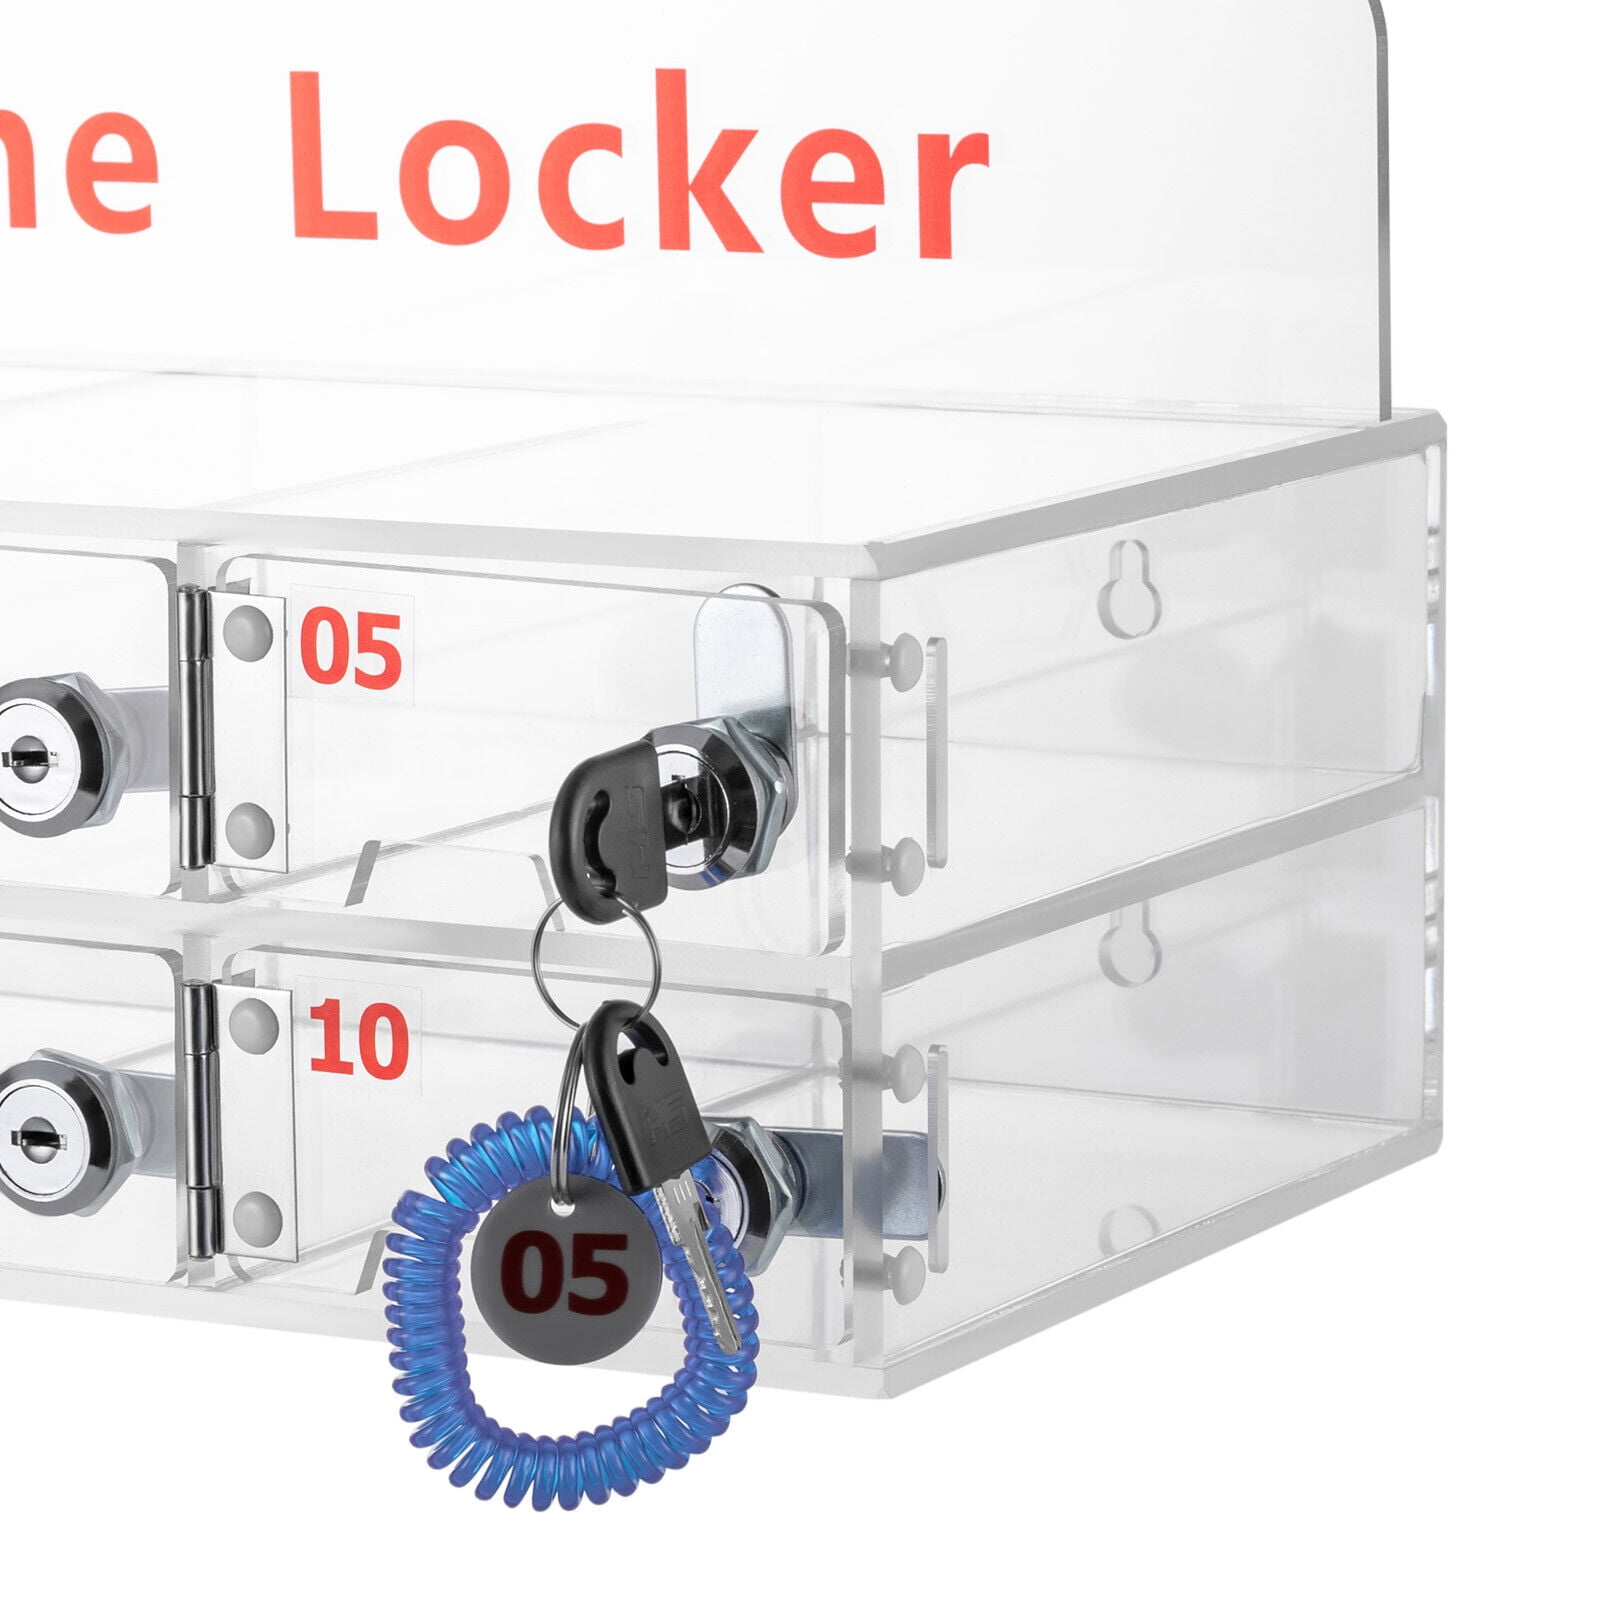 Lockabox Classic - Lockable Storage Box